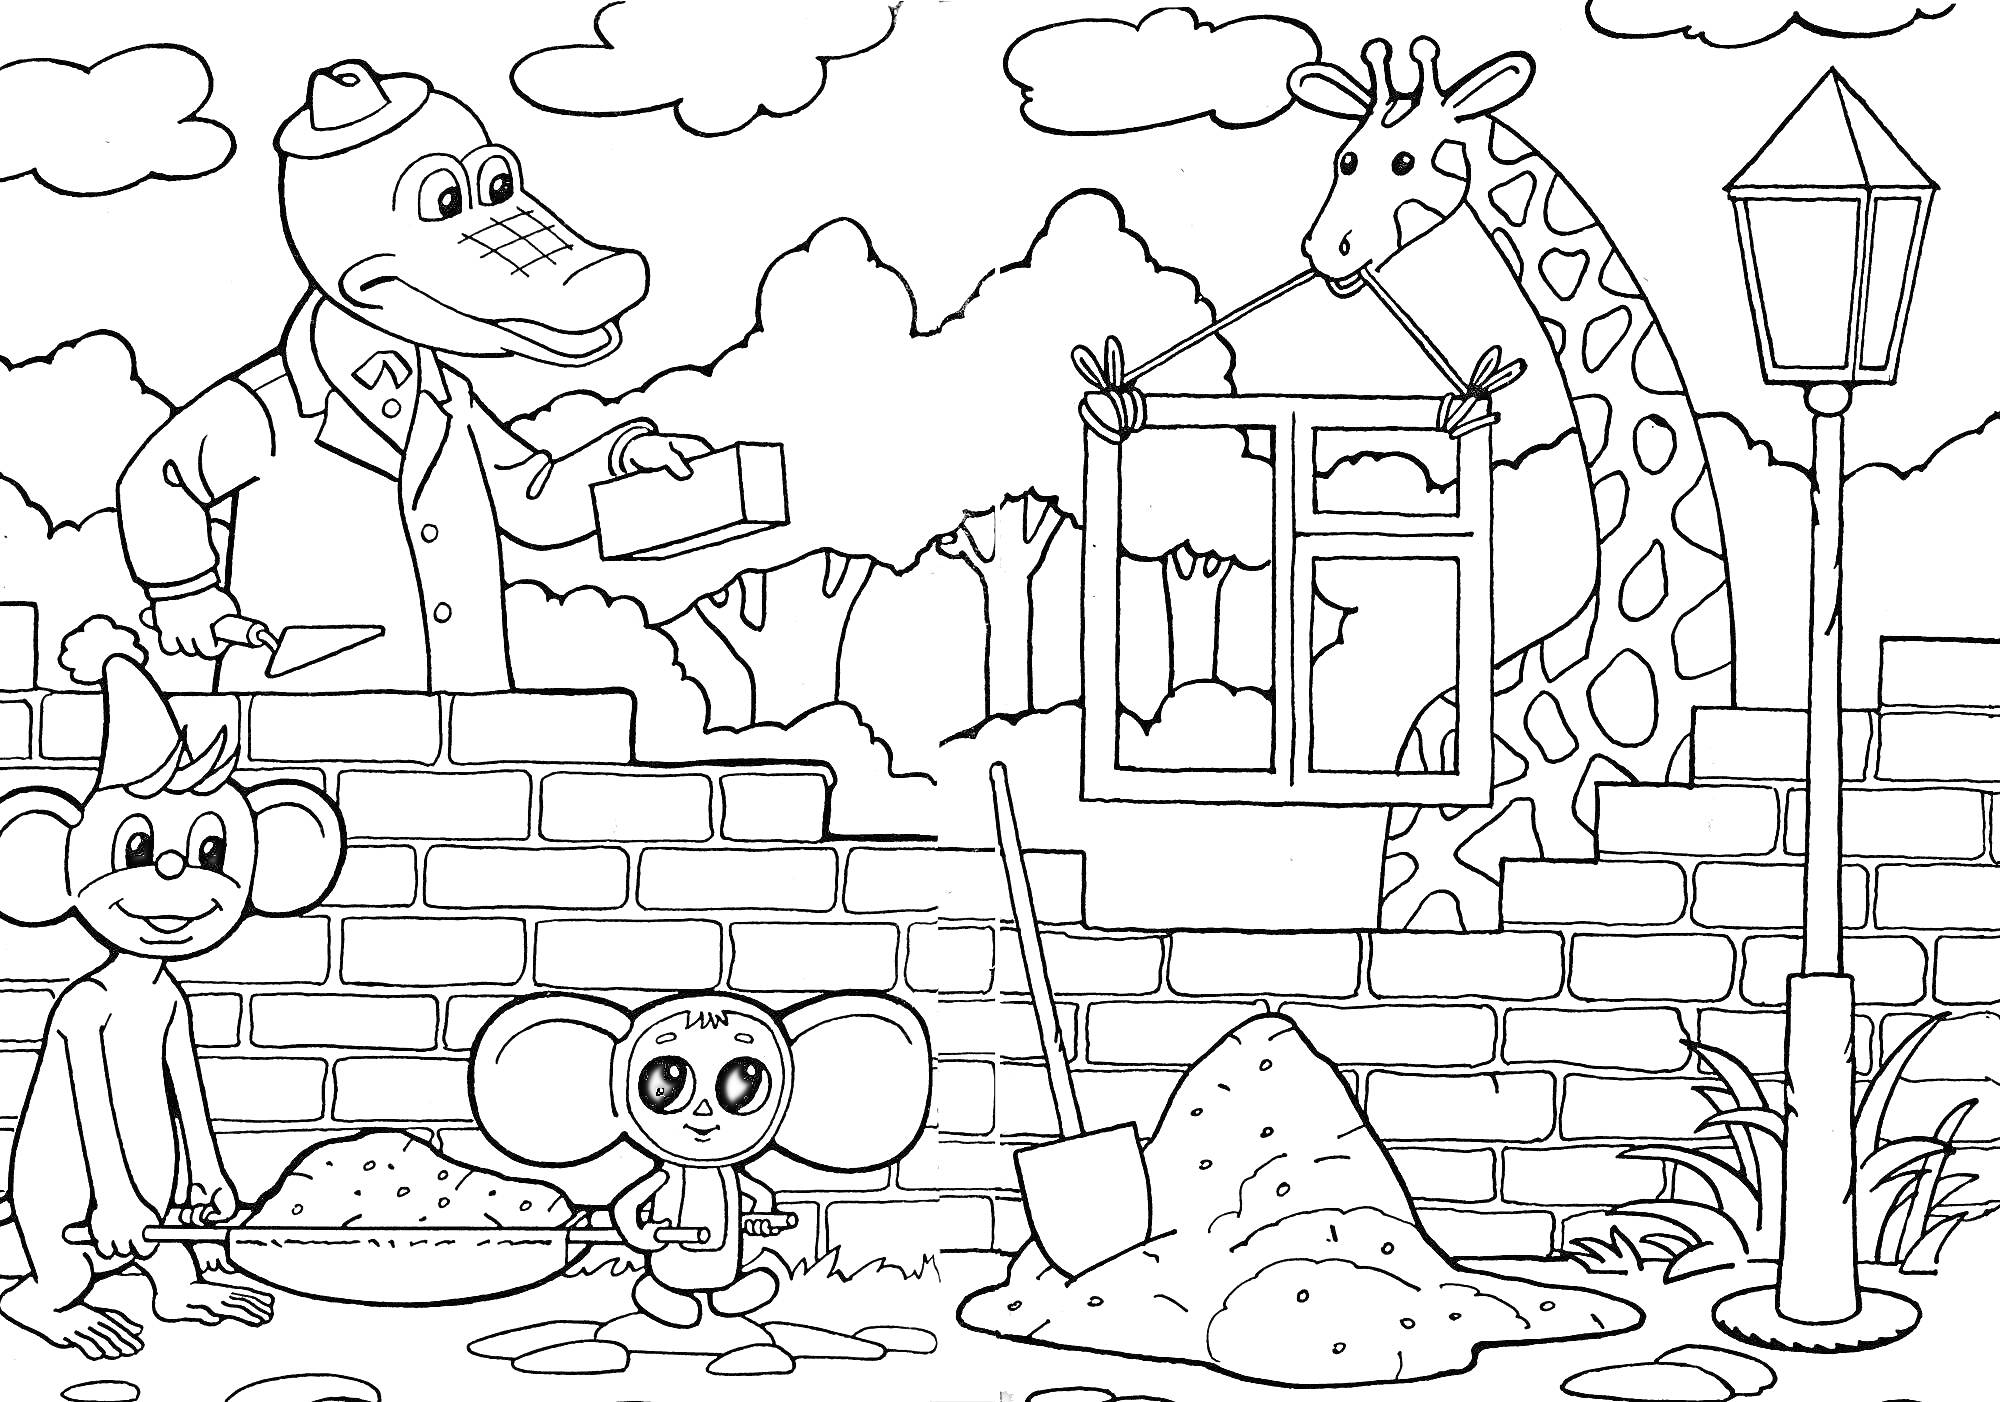 Животные строят кирпичную стену: крокодил с мастерком, жираф с окном, два мышонка на фоне дерева и фонаря.